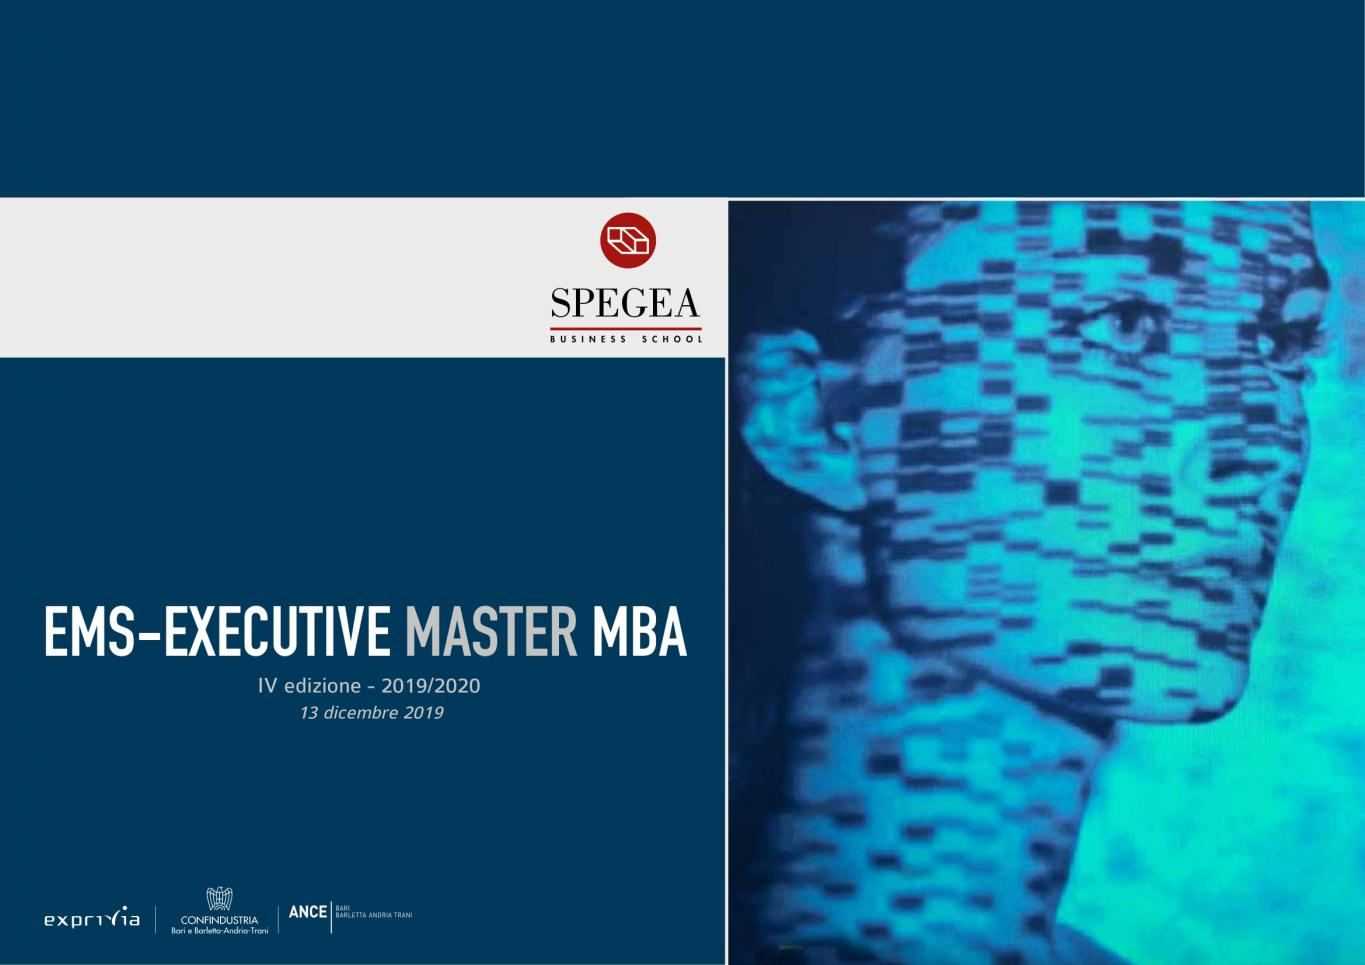 Executive MBA - IV edizione - SPEGEA Business School